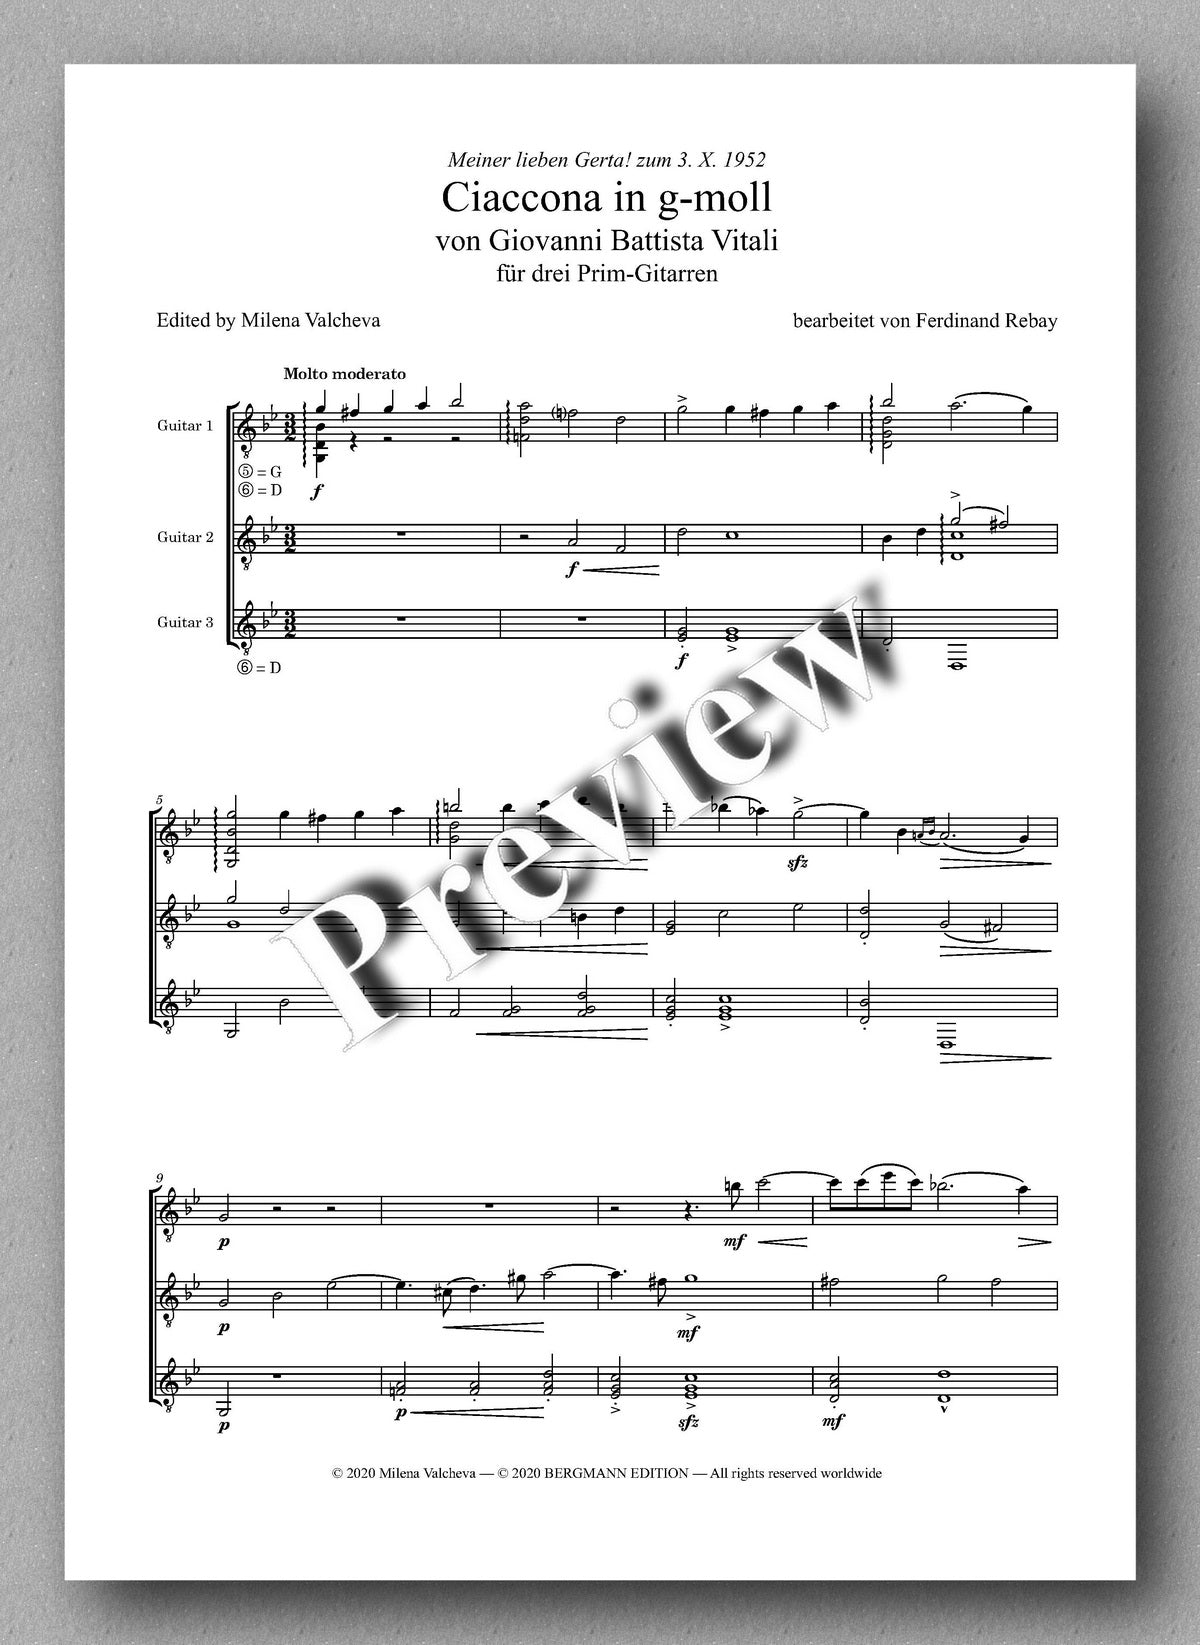 Rebay [162], Ciaccona in g-moll von Giovanni Battista Vitali - music score 1